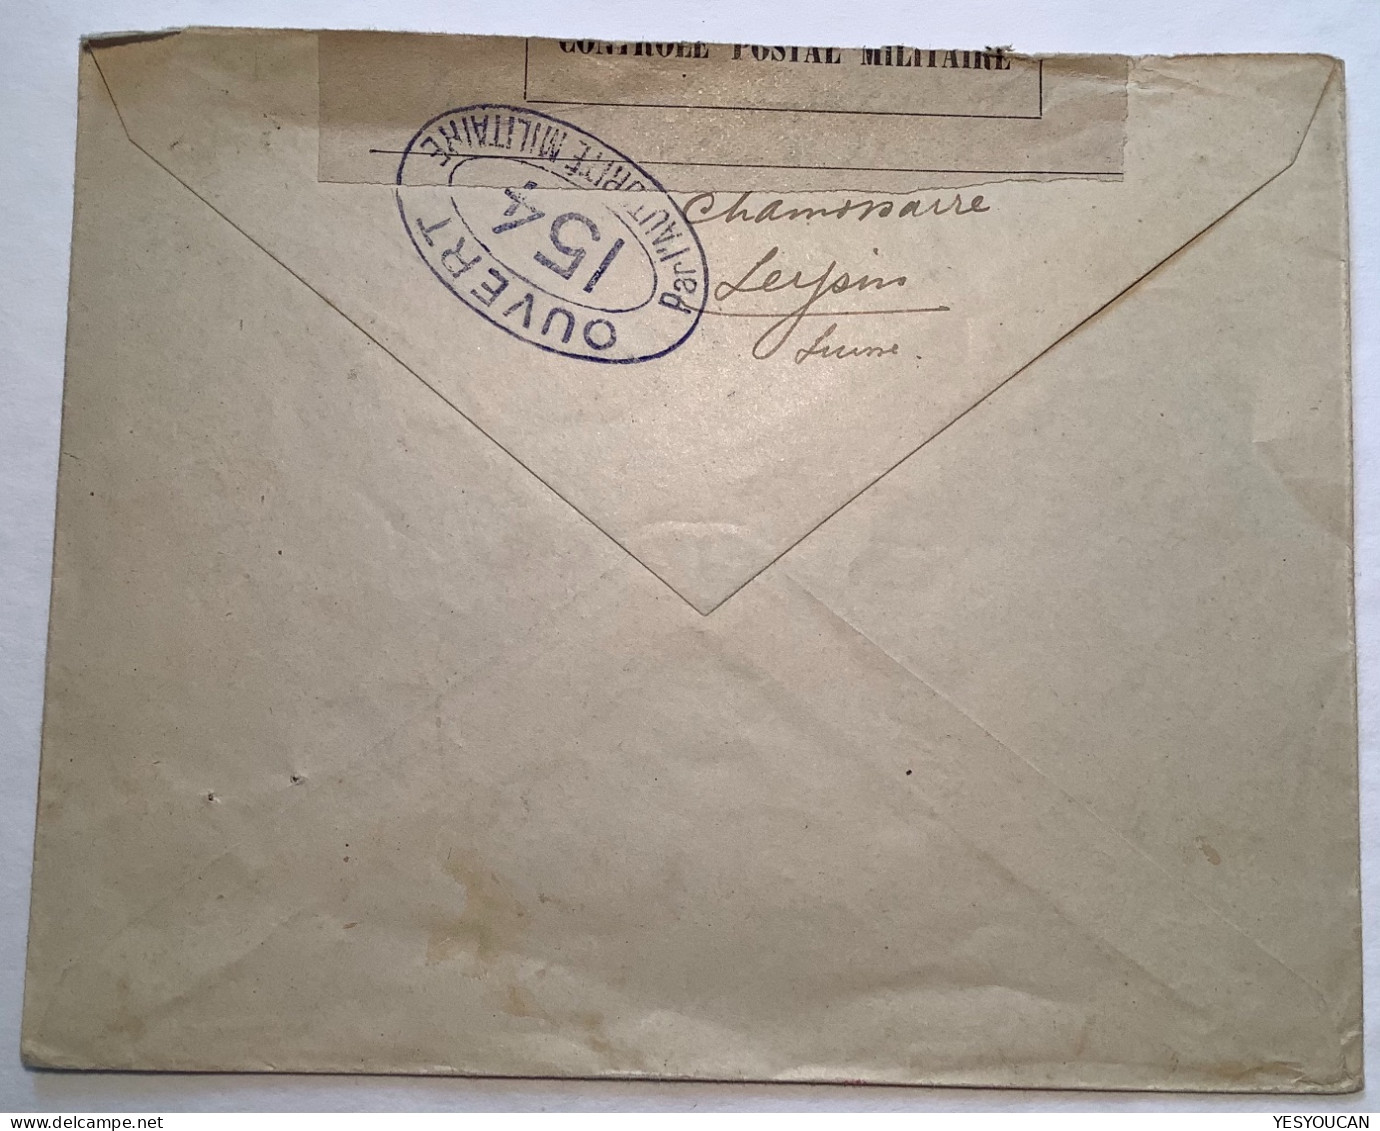 Schweiz1916"PRISONNIERS DE GUERRE(INTERNÉS)LEYSIN SUISSE"CHAMOSSAIRE VD>France(POW WW1 1914-1918censure Brief Lettre Kgf - Briefe U. Dokumente